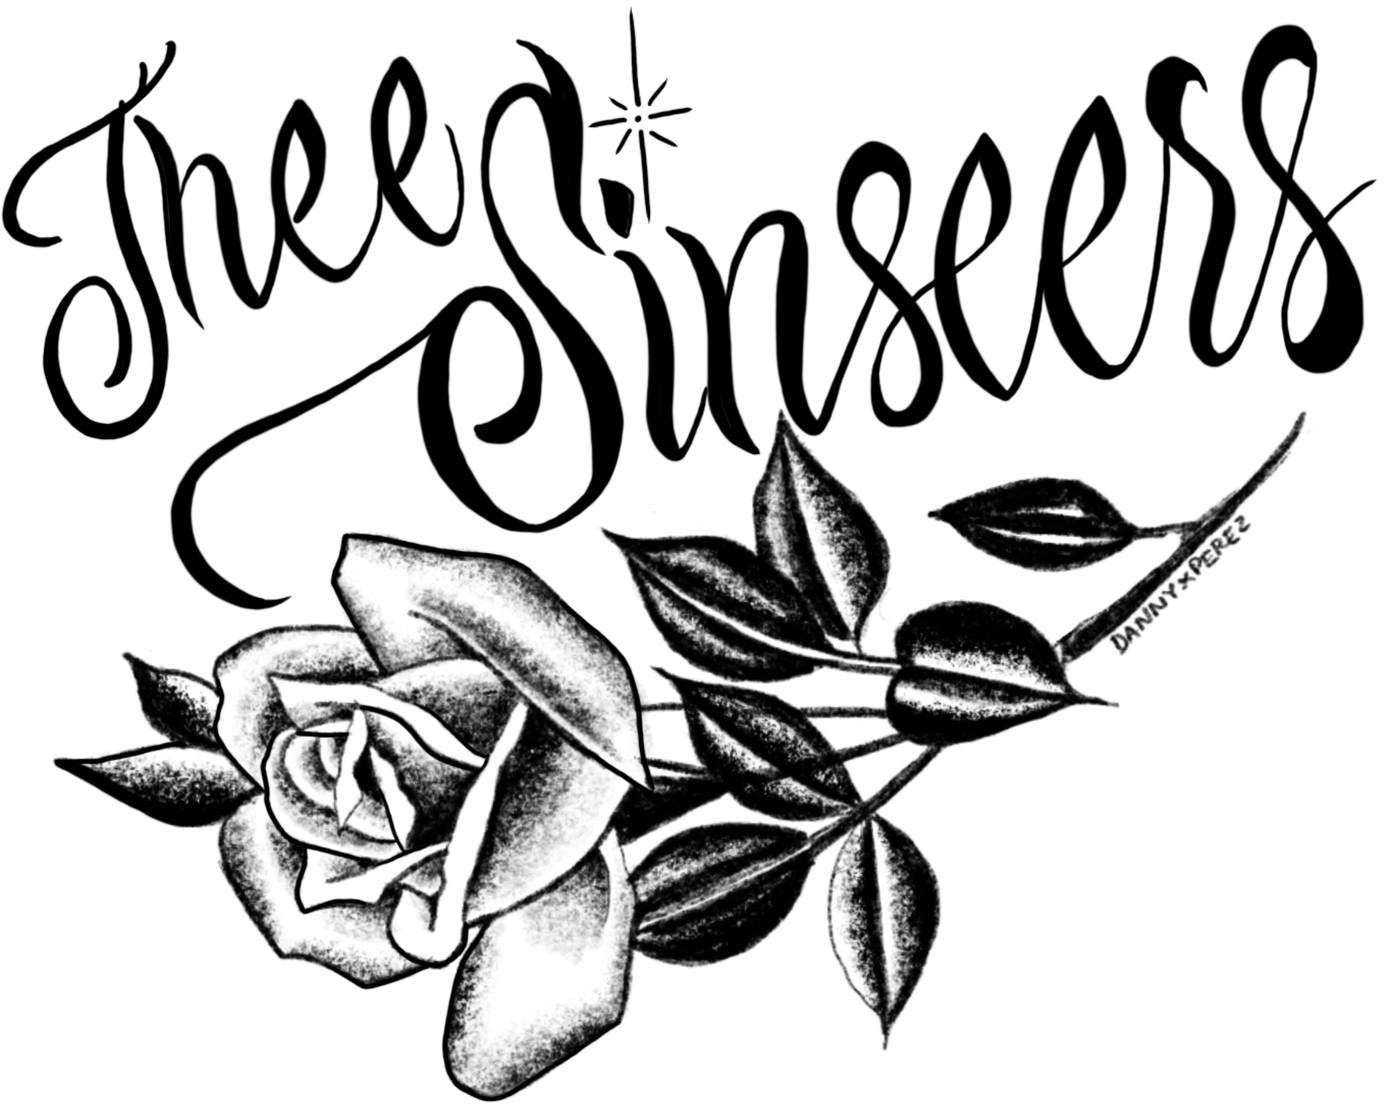 Thee Sinseers logo